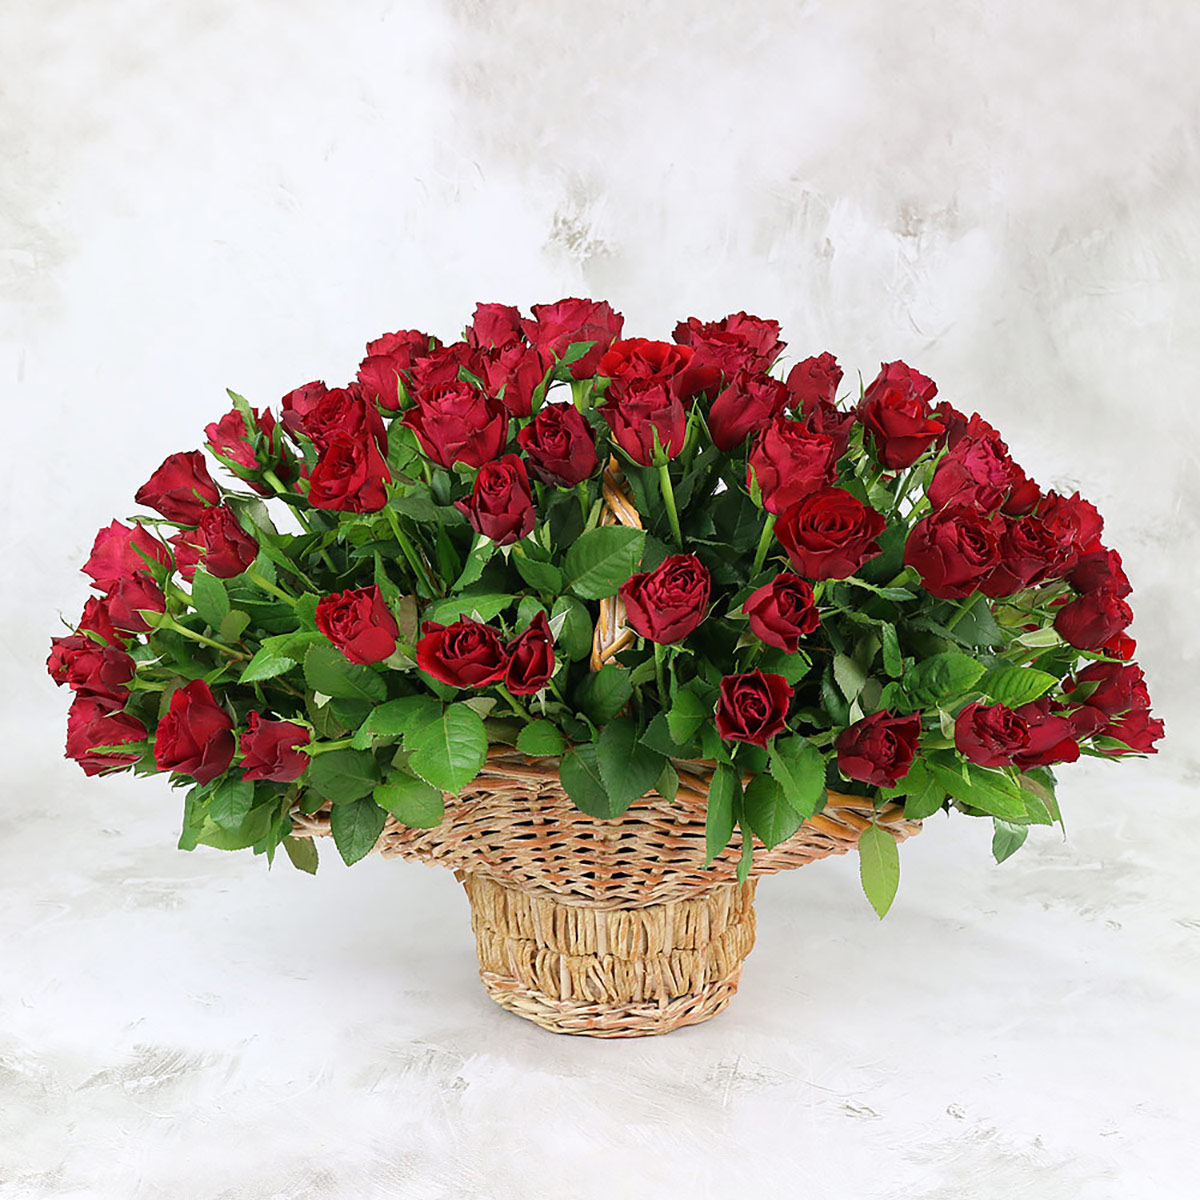 Купить 101 красная роза в корзине, Кения Букет Маркет 101 роза 40 см R0022, цены на Мегамаркет | Артикул: 600015602210